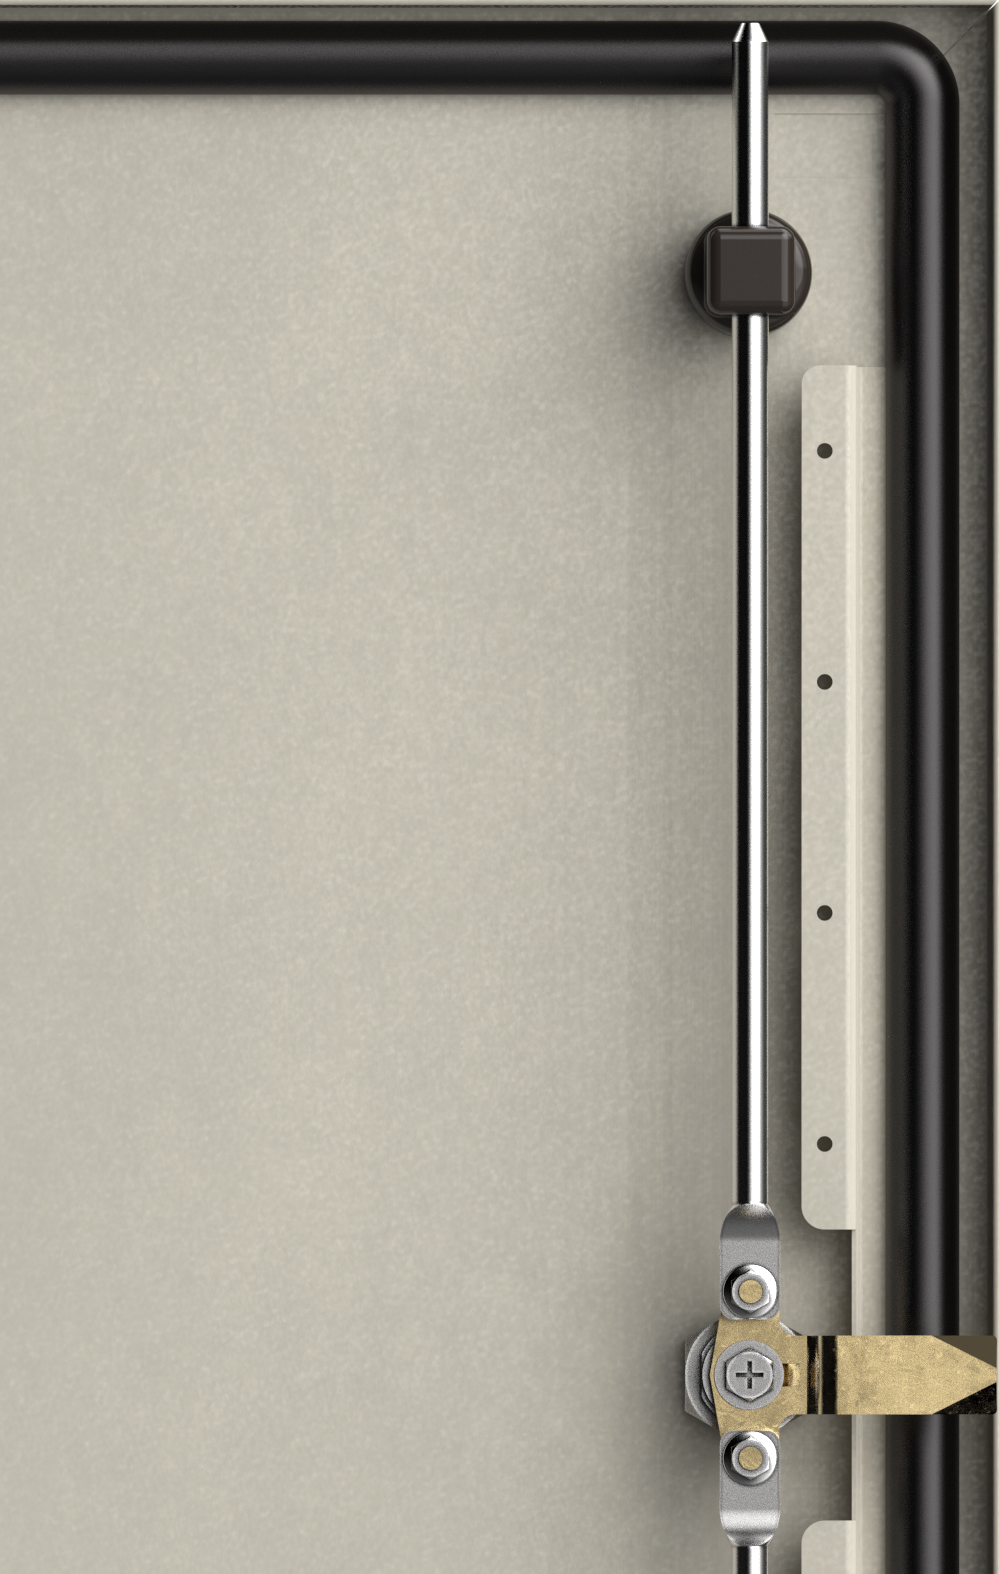 Вертикальные Z-профили на внутренней стороне двери - для фиксации кабельного жгута при установке оборудования, увеличивают жесткость двери.